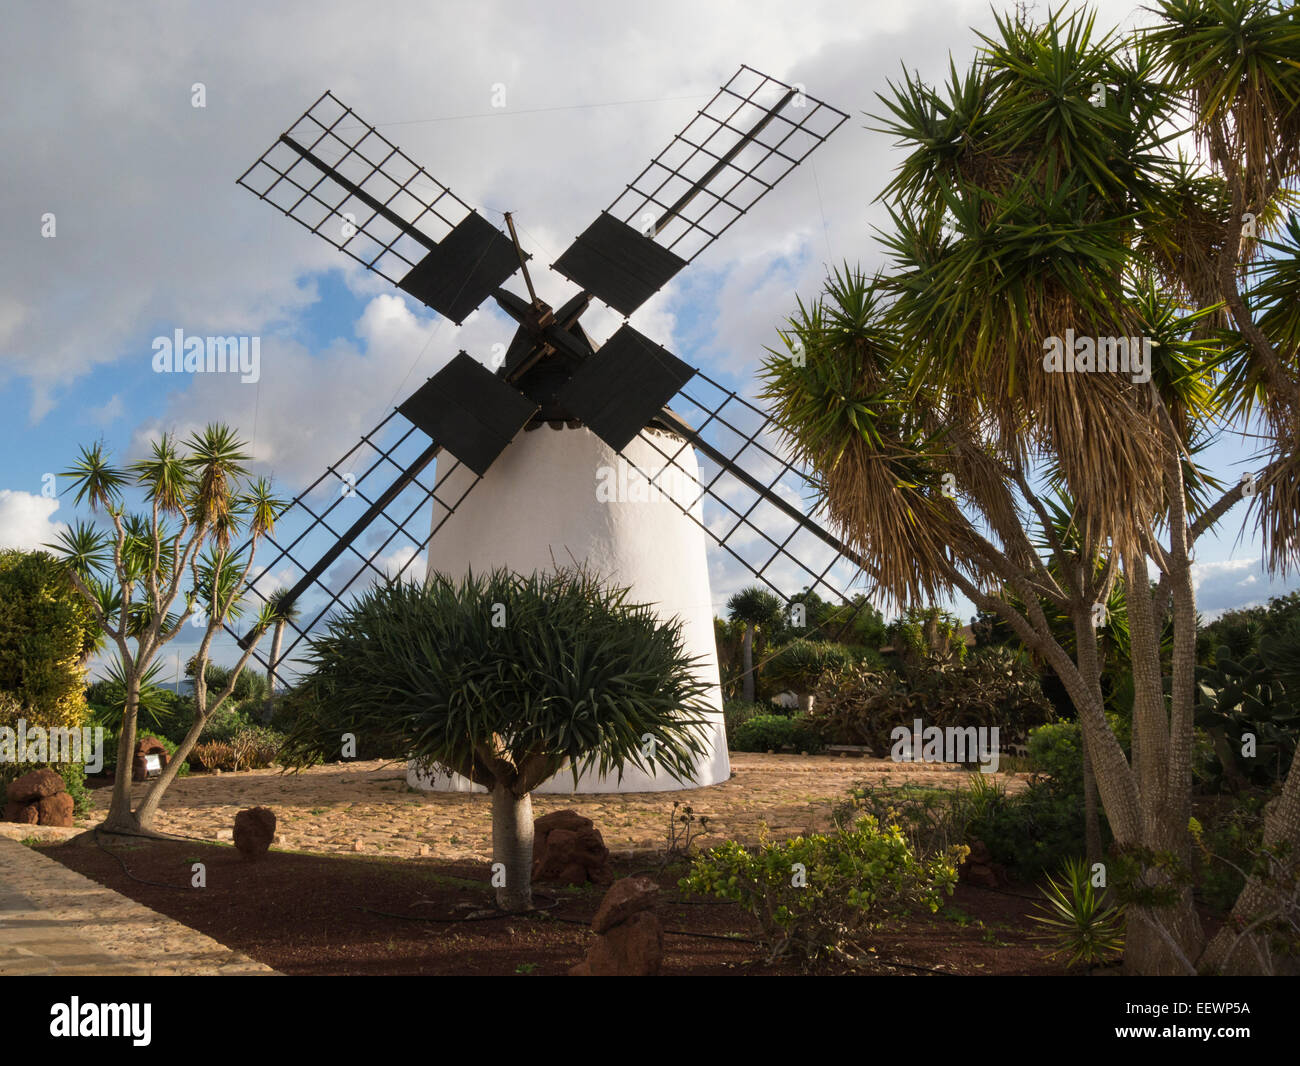 Male windmill at Centro de Artesania Molino de Antigua Fuerteventura Canary Islands cultural and artistic museum in a windmill Stock Photo